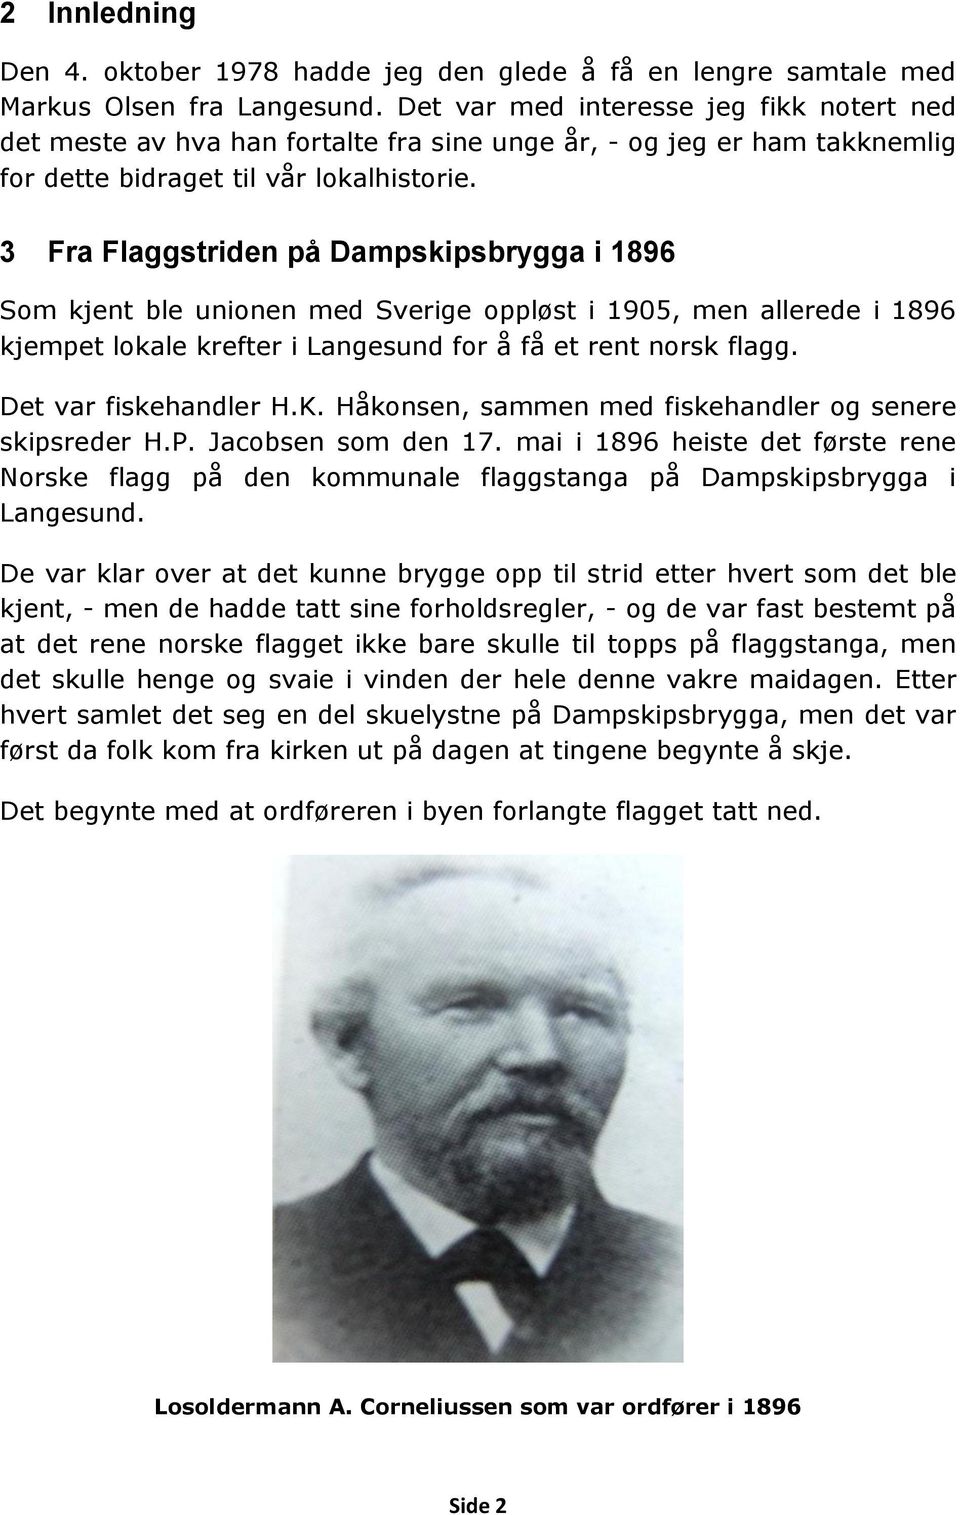 3 Fra Flaggstriden på Dampskipsbrygga i 1896 Som kjent ble unionen med Sverige oppløst i 1905, men allerede i 1896 kjempet lokale krefter i Langesund for å få et rent norsk flagg.